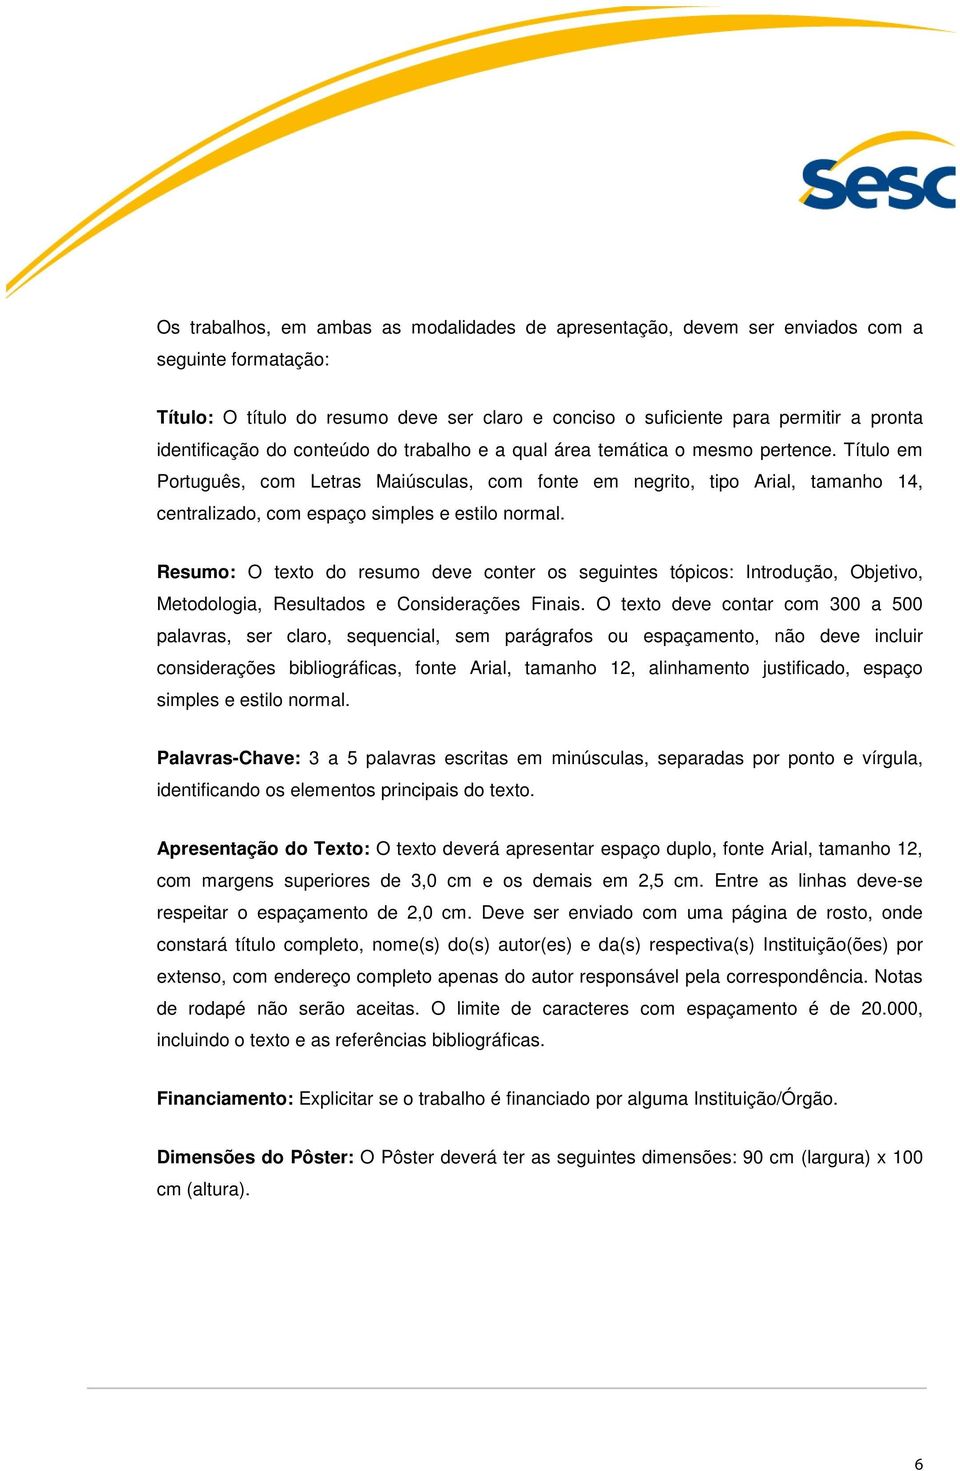 Título em Português, com Letras Maiúsculas, com fonte em negrito, tipo Arial, tamanho 14, centralizado, com espaço simples e estilo normal.